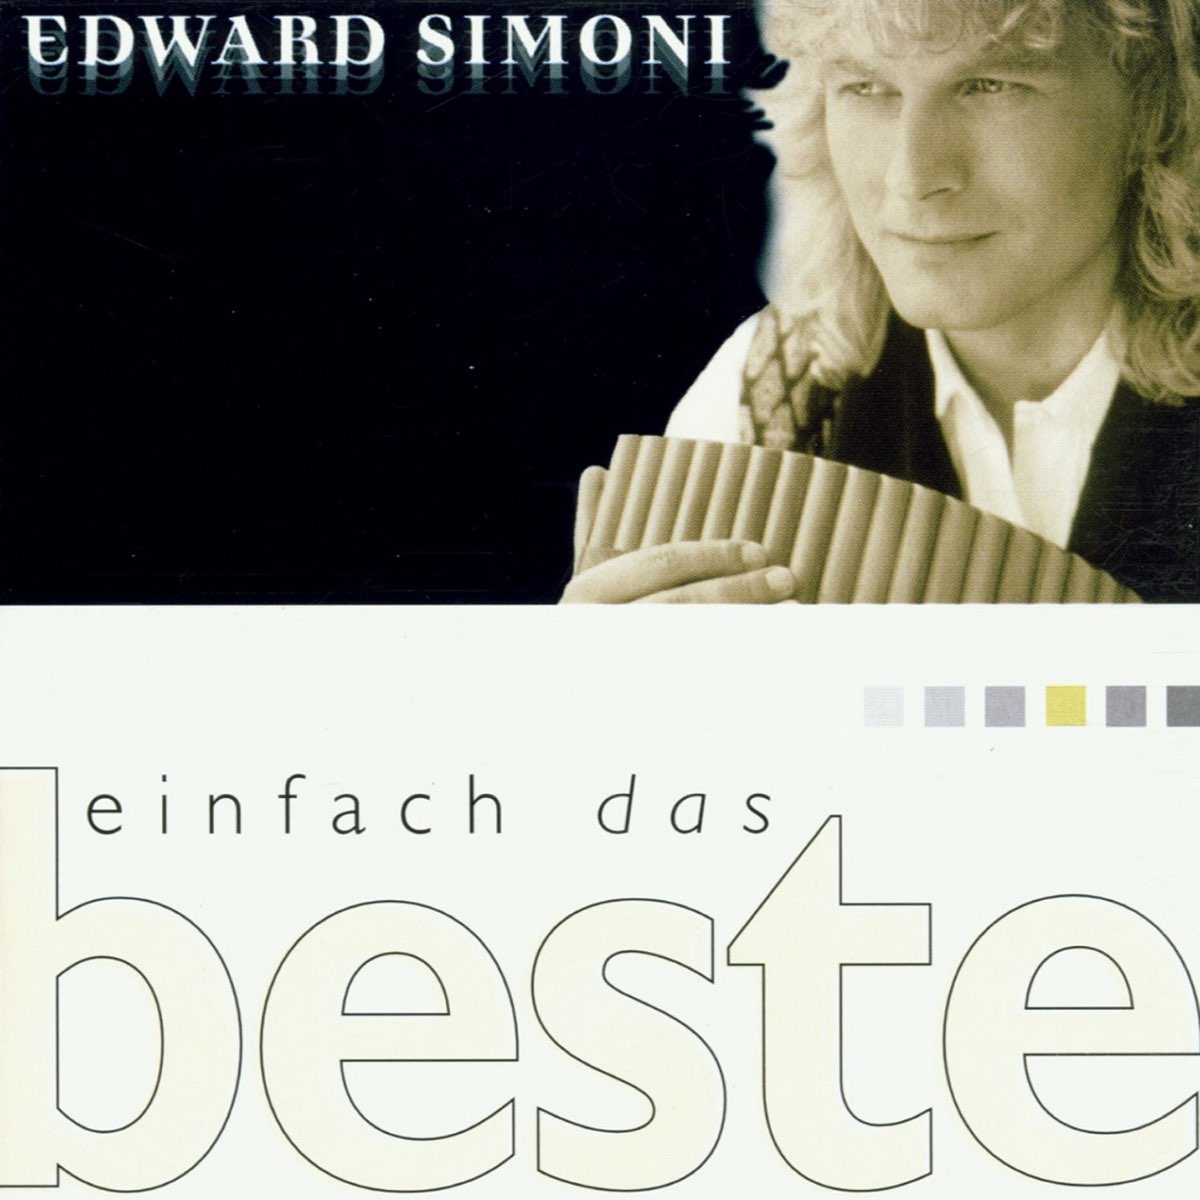 Edward simoni. Edward Simoni-the best.90г.2005г. Popcorn - Edward Simoni фото из альбома.